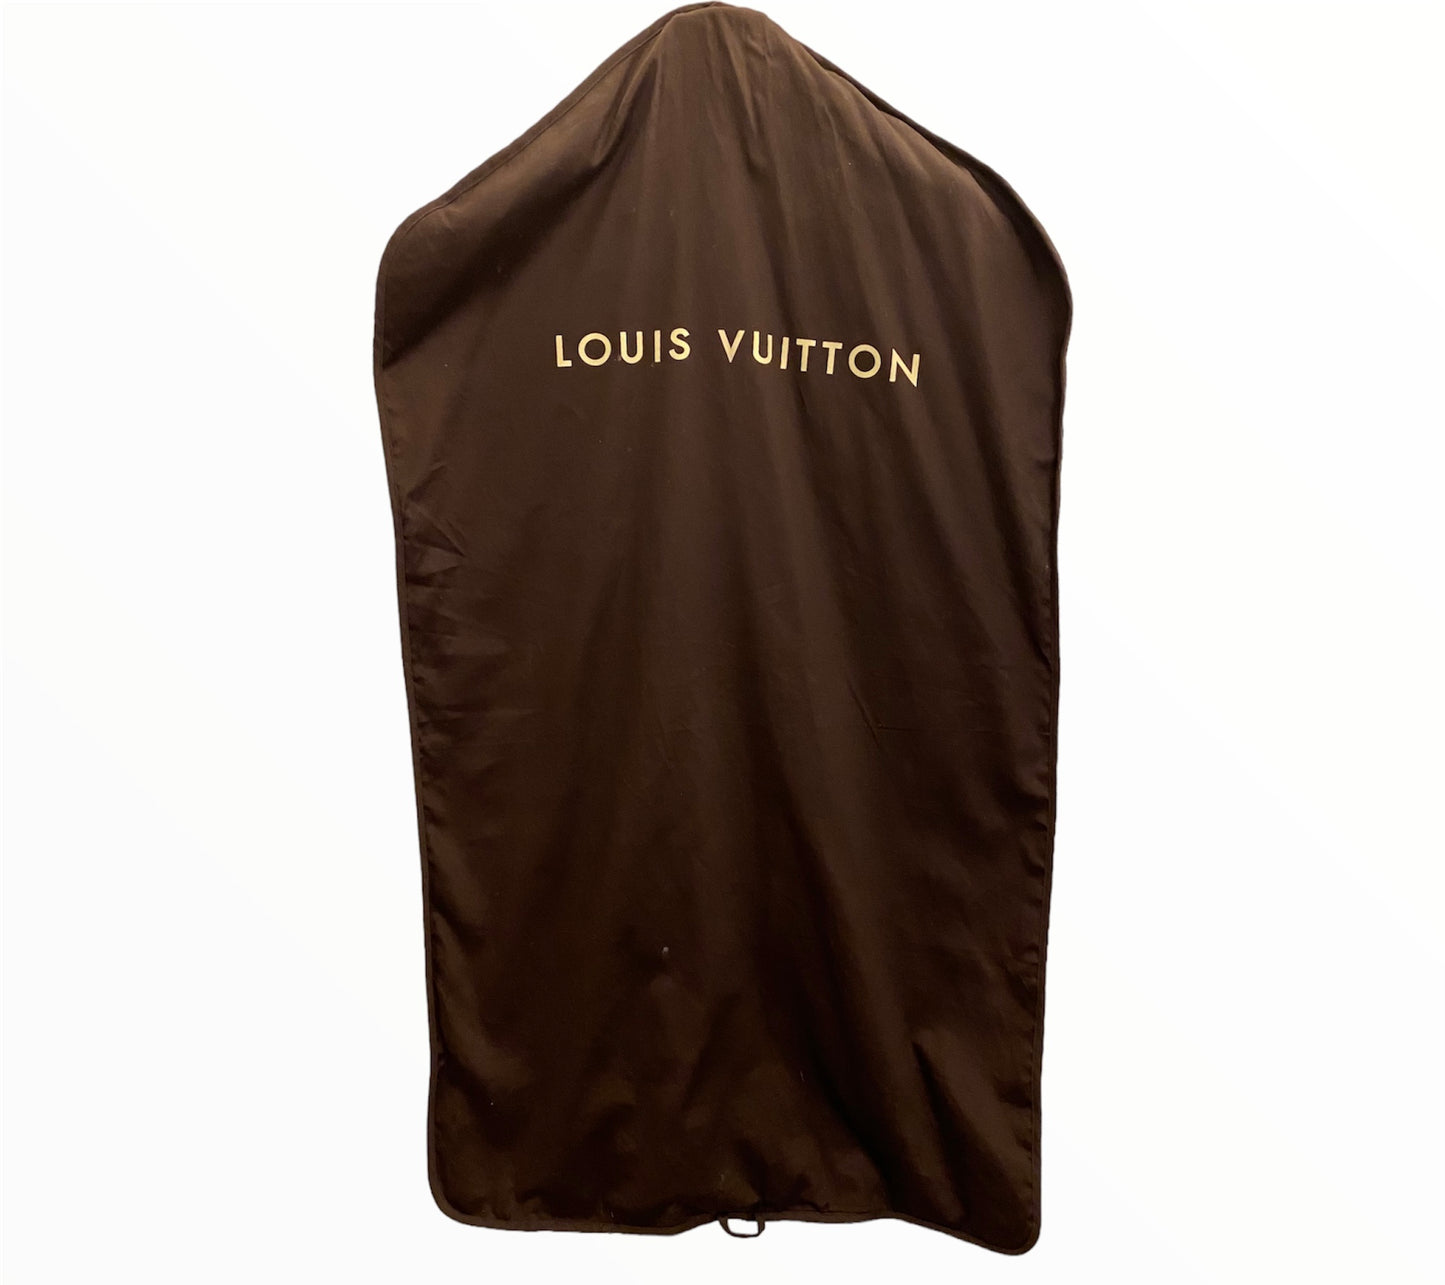 LOUIS VUITTON Velvet Black Jacket Size It 42 Eu S